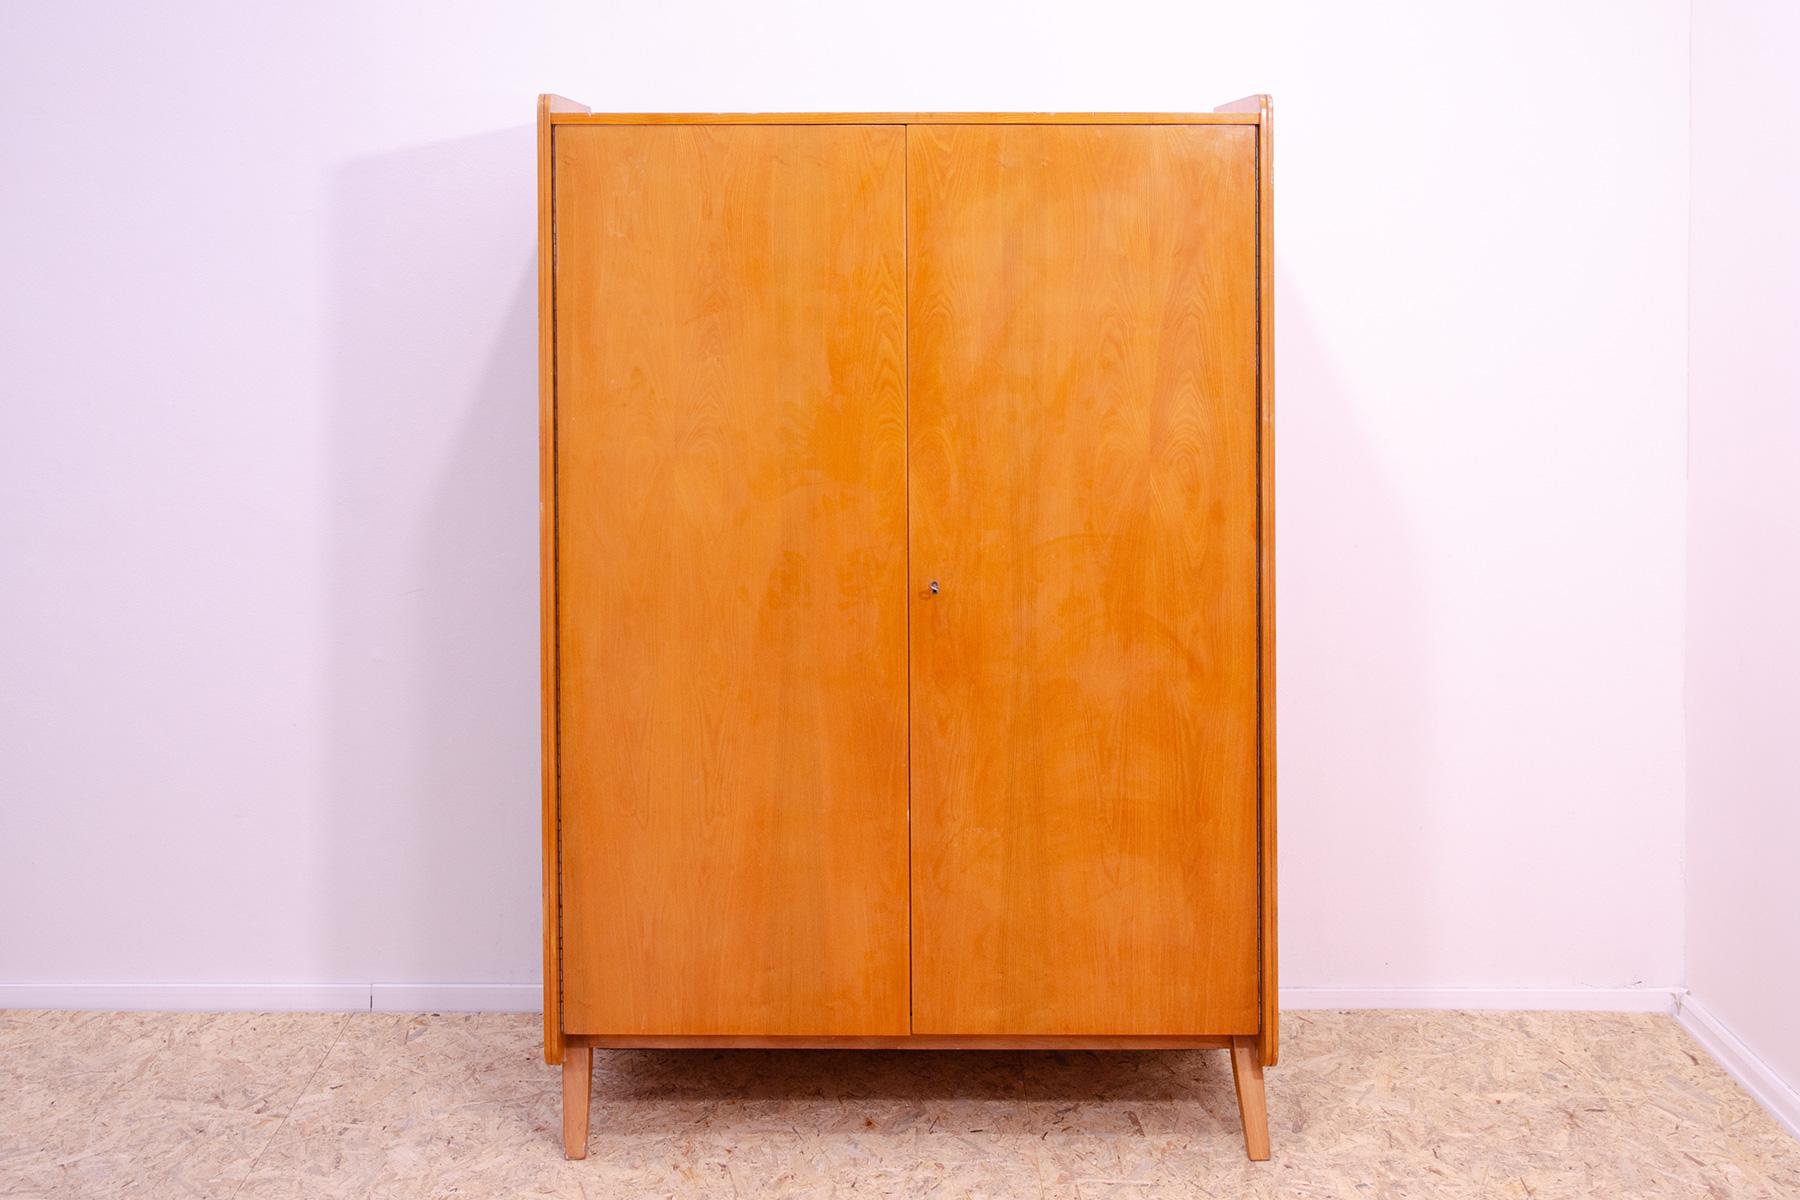 Cette armoire a été conçue par František Jirák pour la société Tatra nábytok dans l'ancienne Tchécoslovaquie dans les années 1960.

Il est fabriqué en bois de hêtre et en contreplaqué.

Vous pouvez y suspendre vos vêtements,  placer des